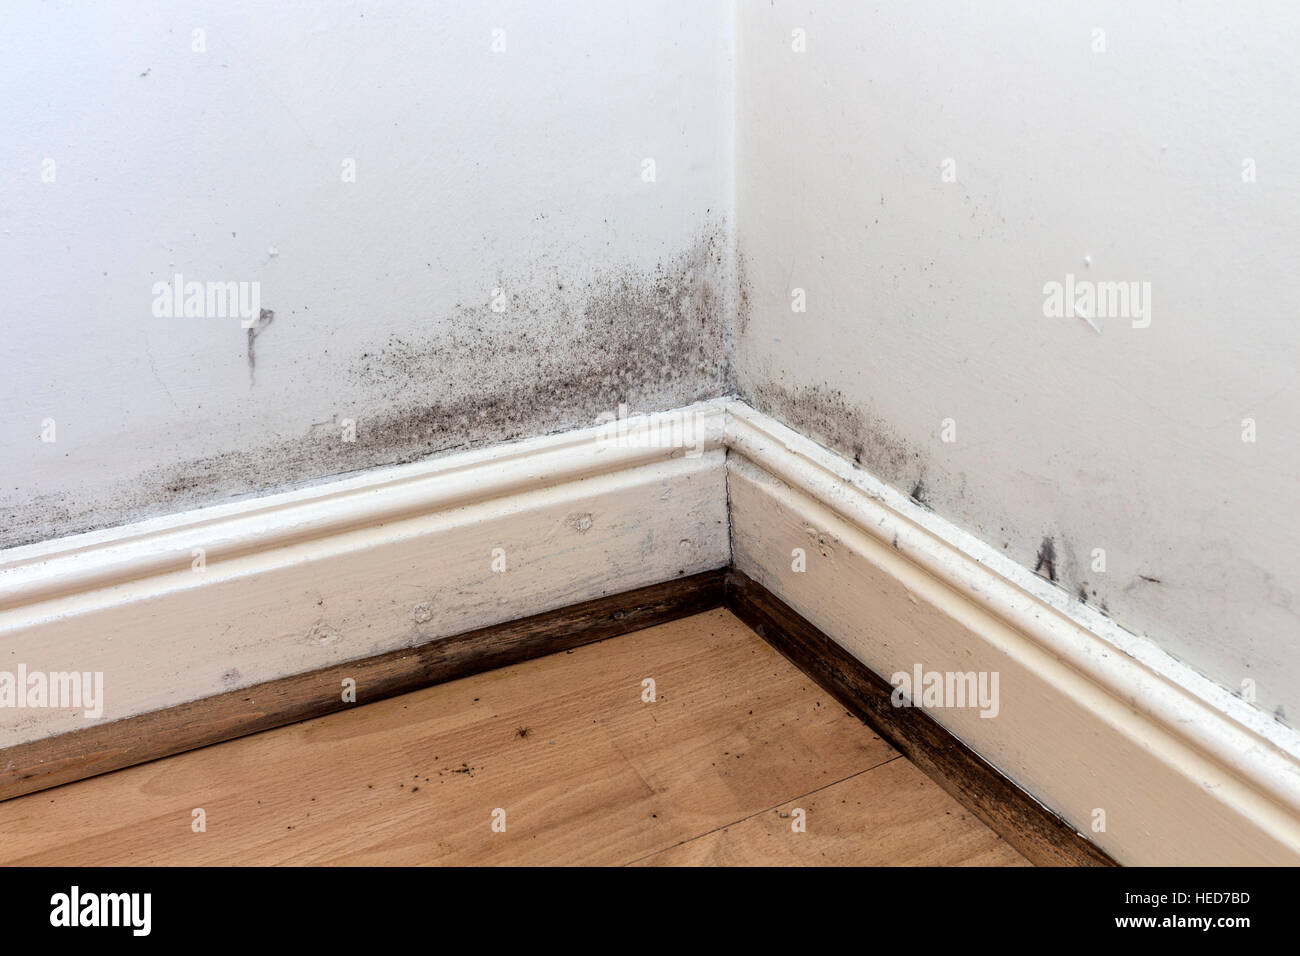 El moho negro en las paredes, Rodapiés y piso de una casa alquilada en el REINO UNIDO Foto de stock